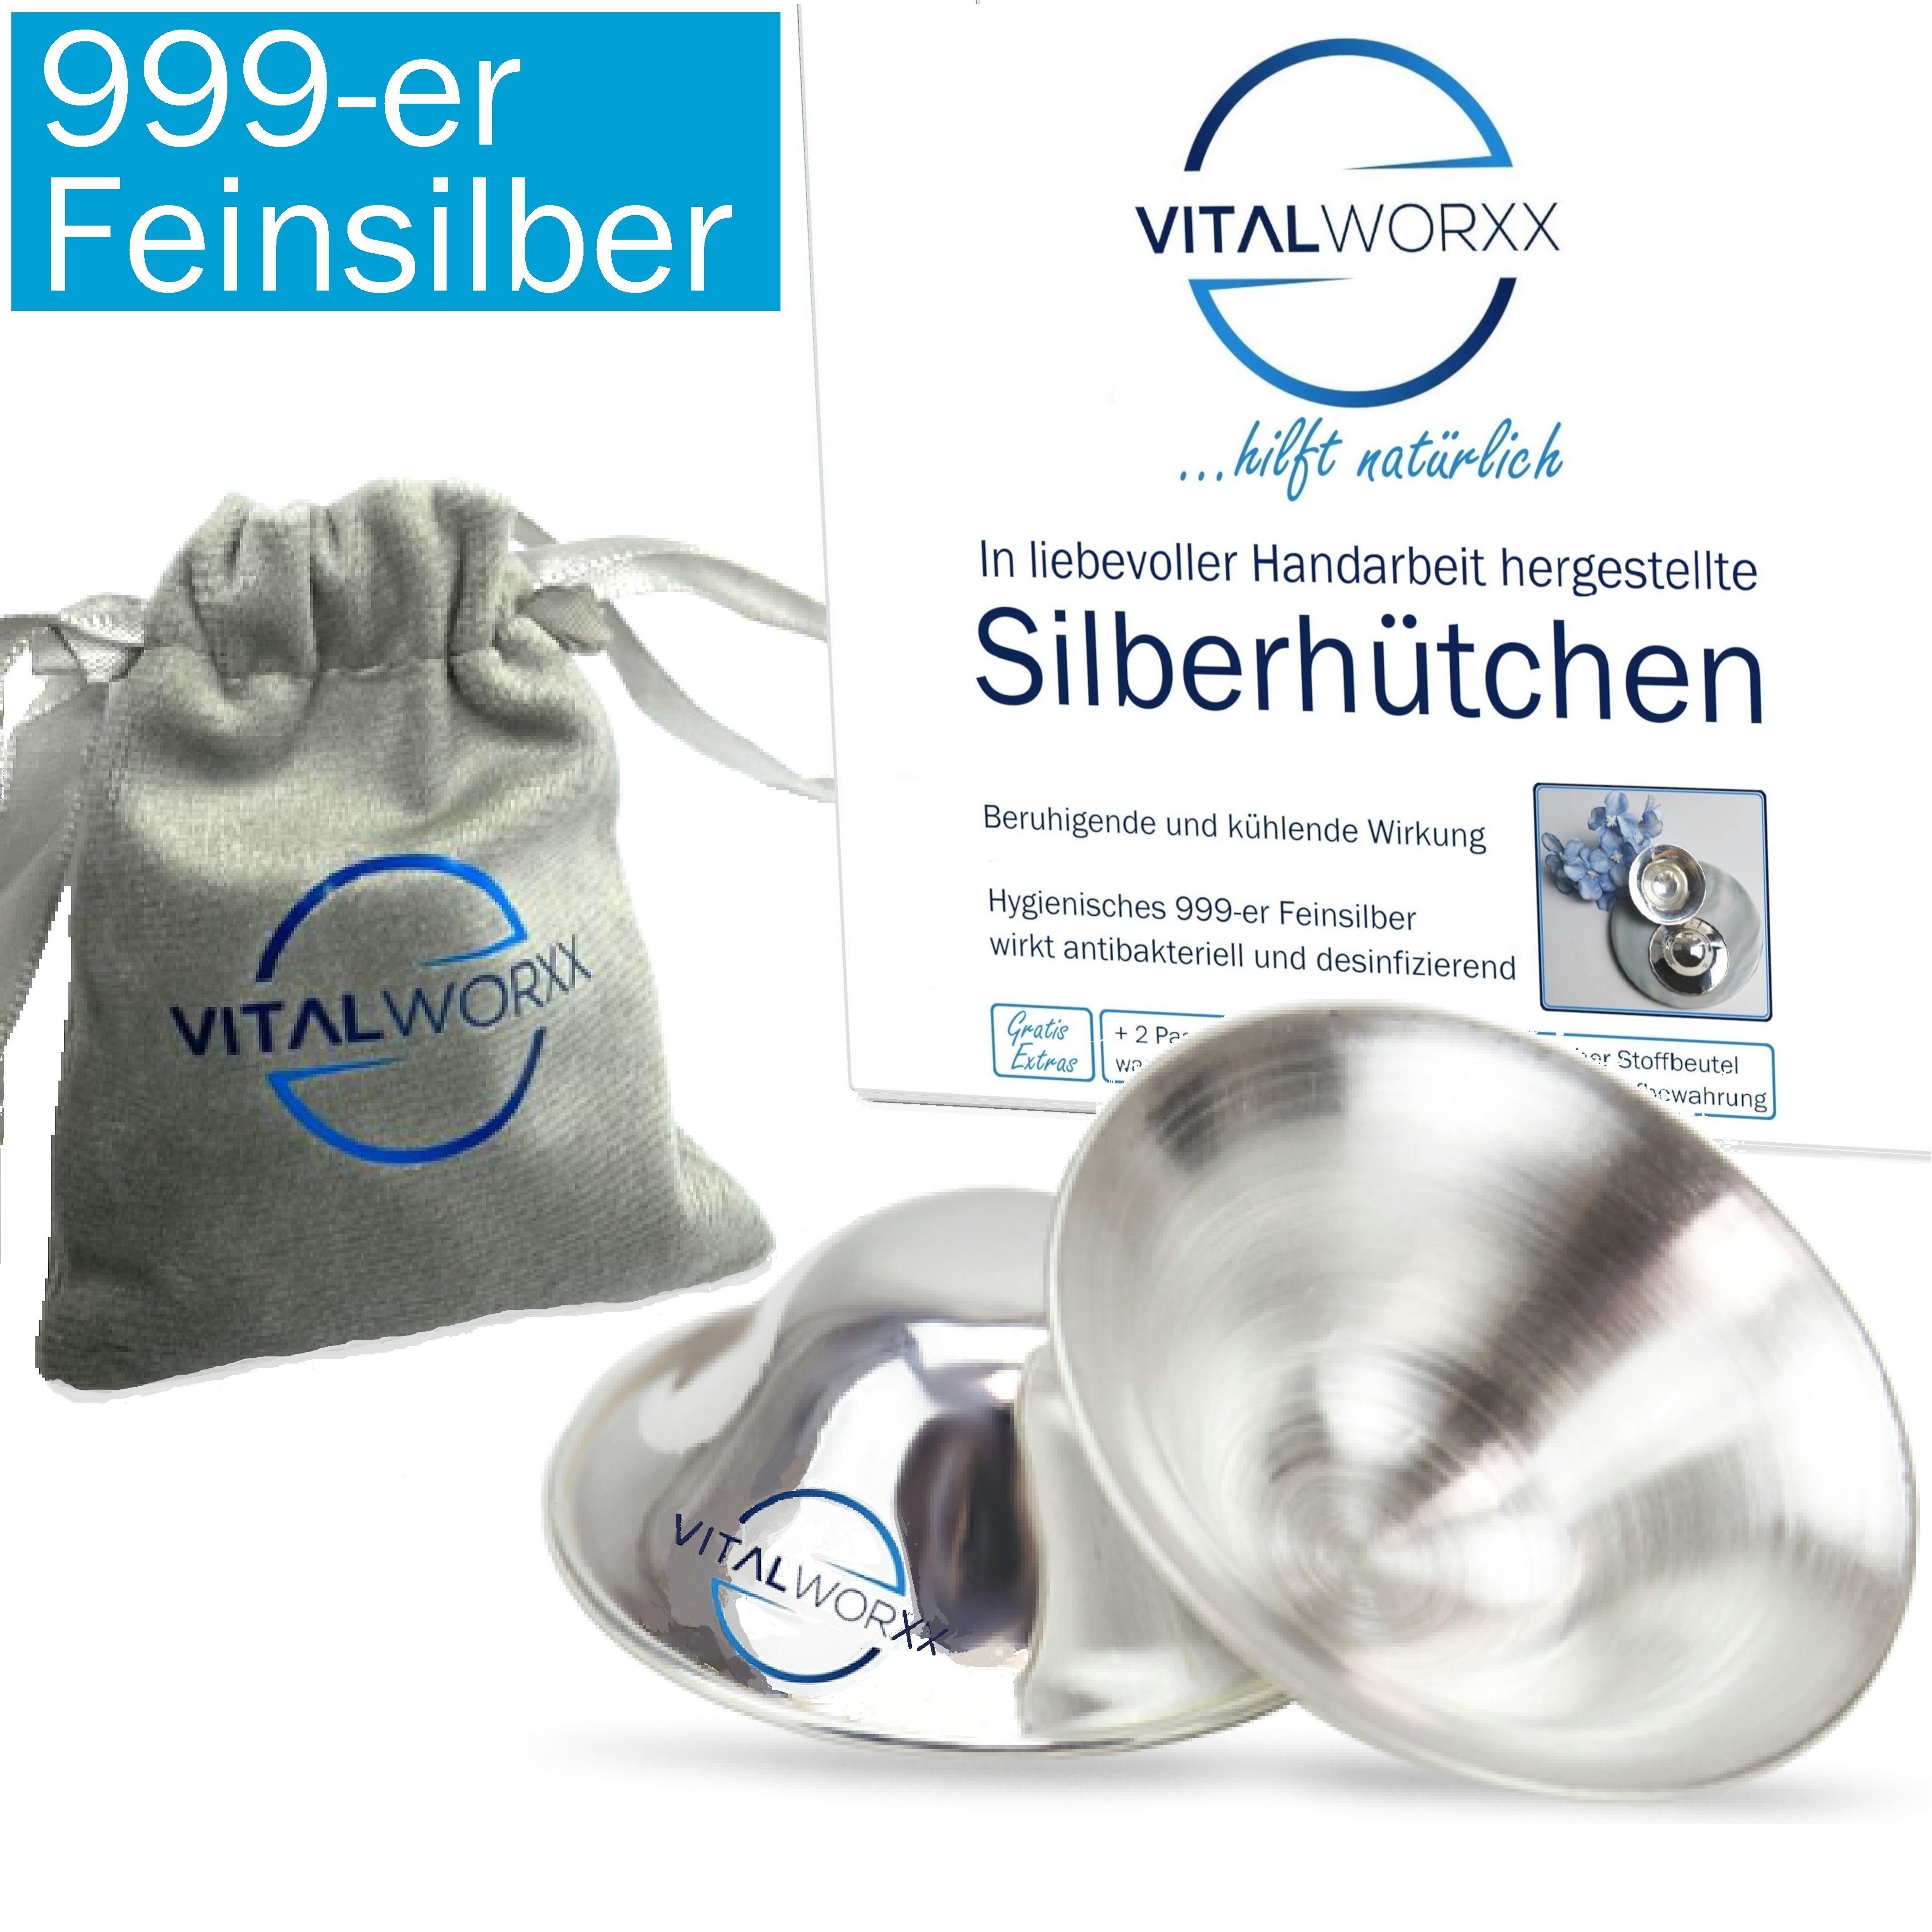 VITALWORXX BH-Stilleinlagen 2 Stück Silberhütchen bei (Komplett-Sorglos-Paket), Hilfe Brustwarzen Feinsilber (Sterlingsilber) 999-er empfindlichen - schnelle massives